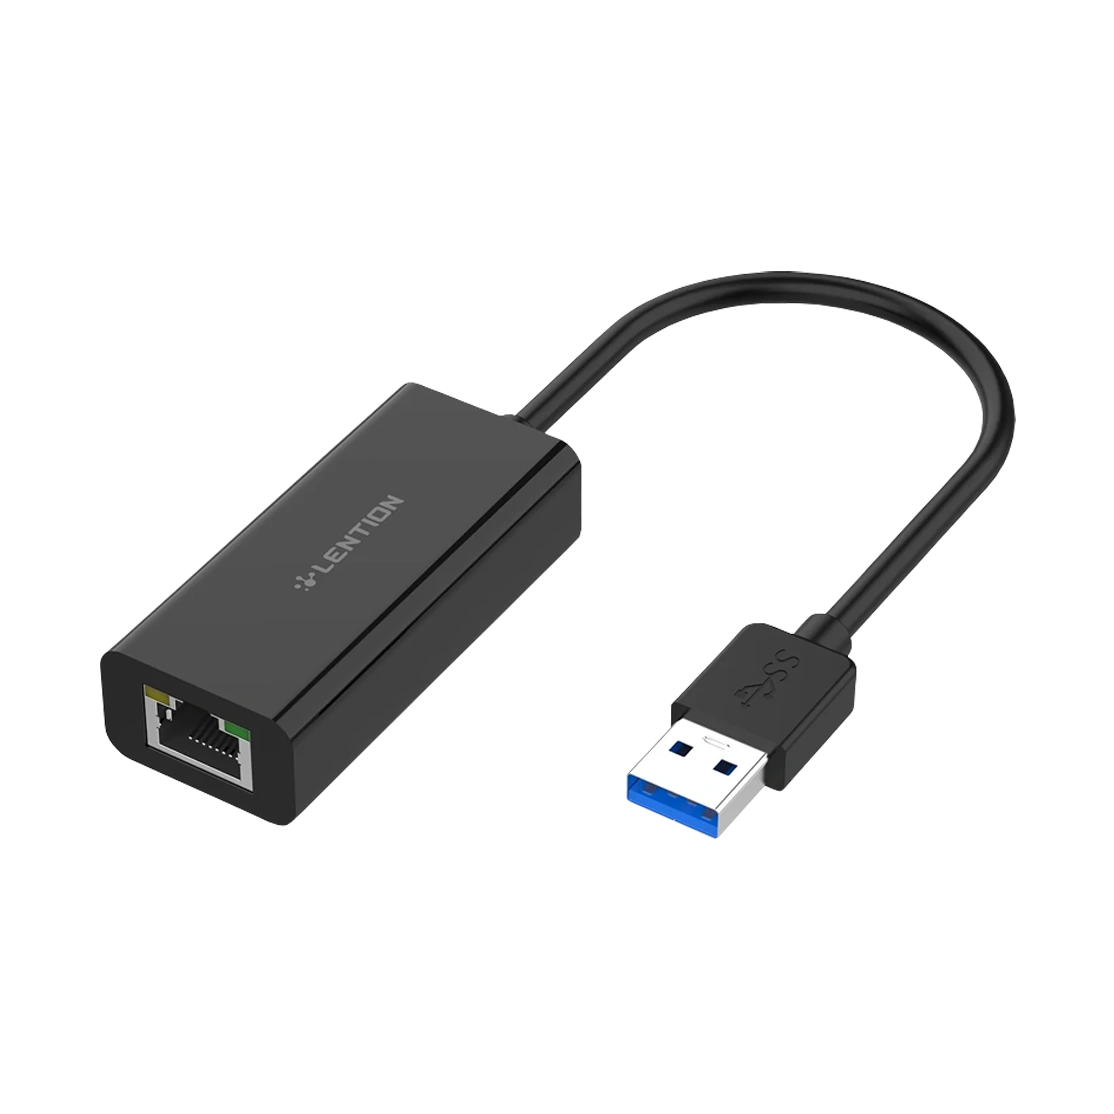 Lention USB to Gigabit Ethernet Adapter HU404GE